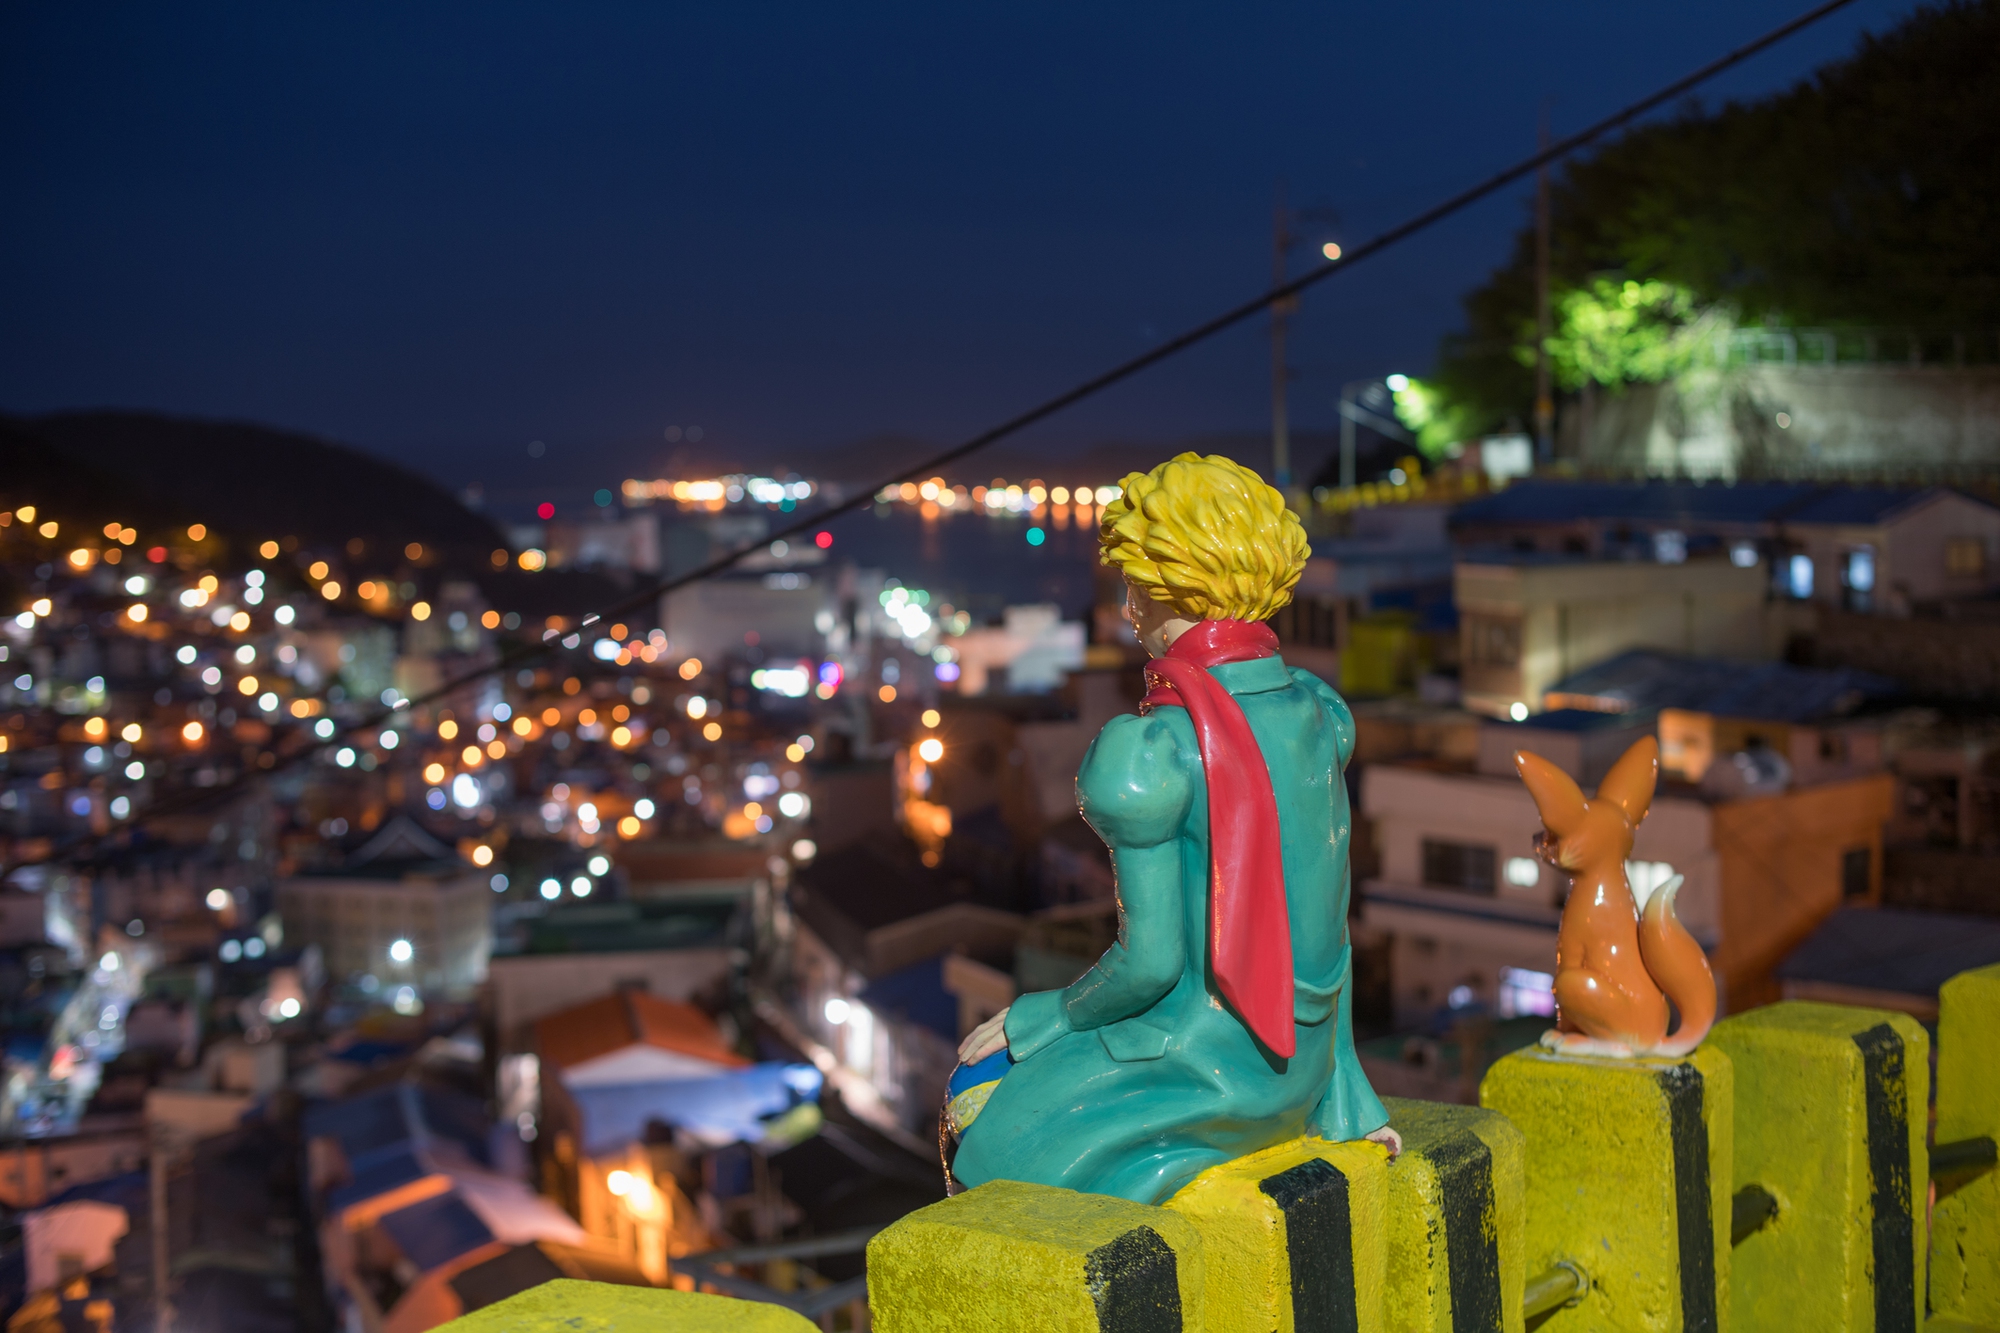 Có gì đặc biệt ở ngôi làng sắc màu được mệnh danh là 'Santorini của Hàn Quốc'? - Ảnh 2.